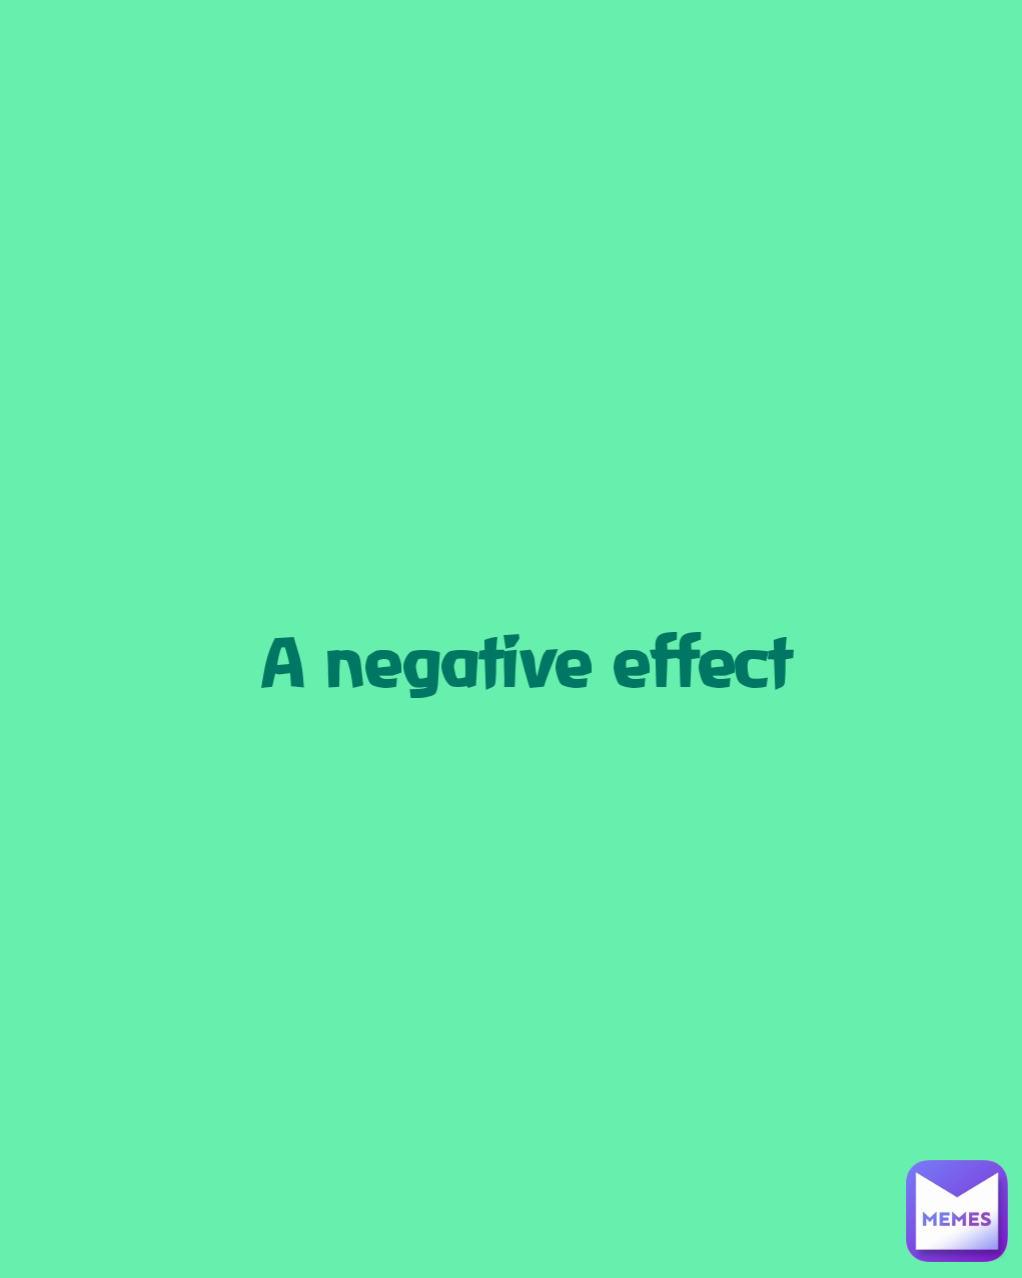 A negative effect